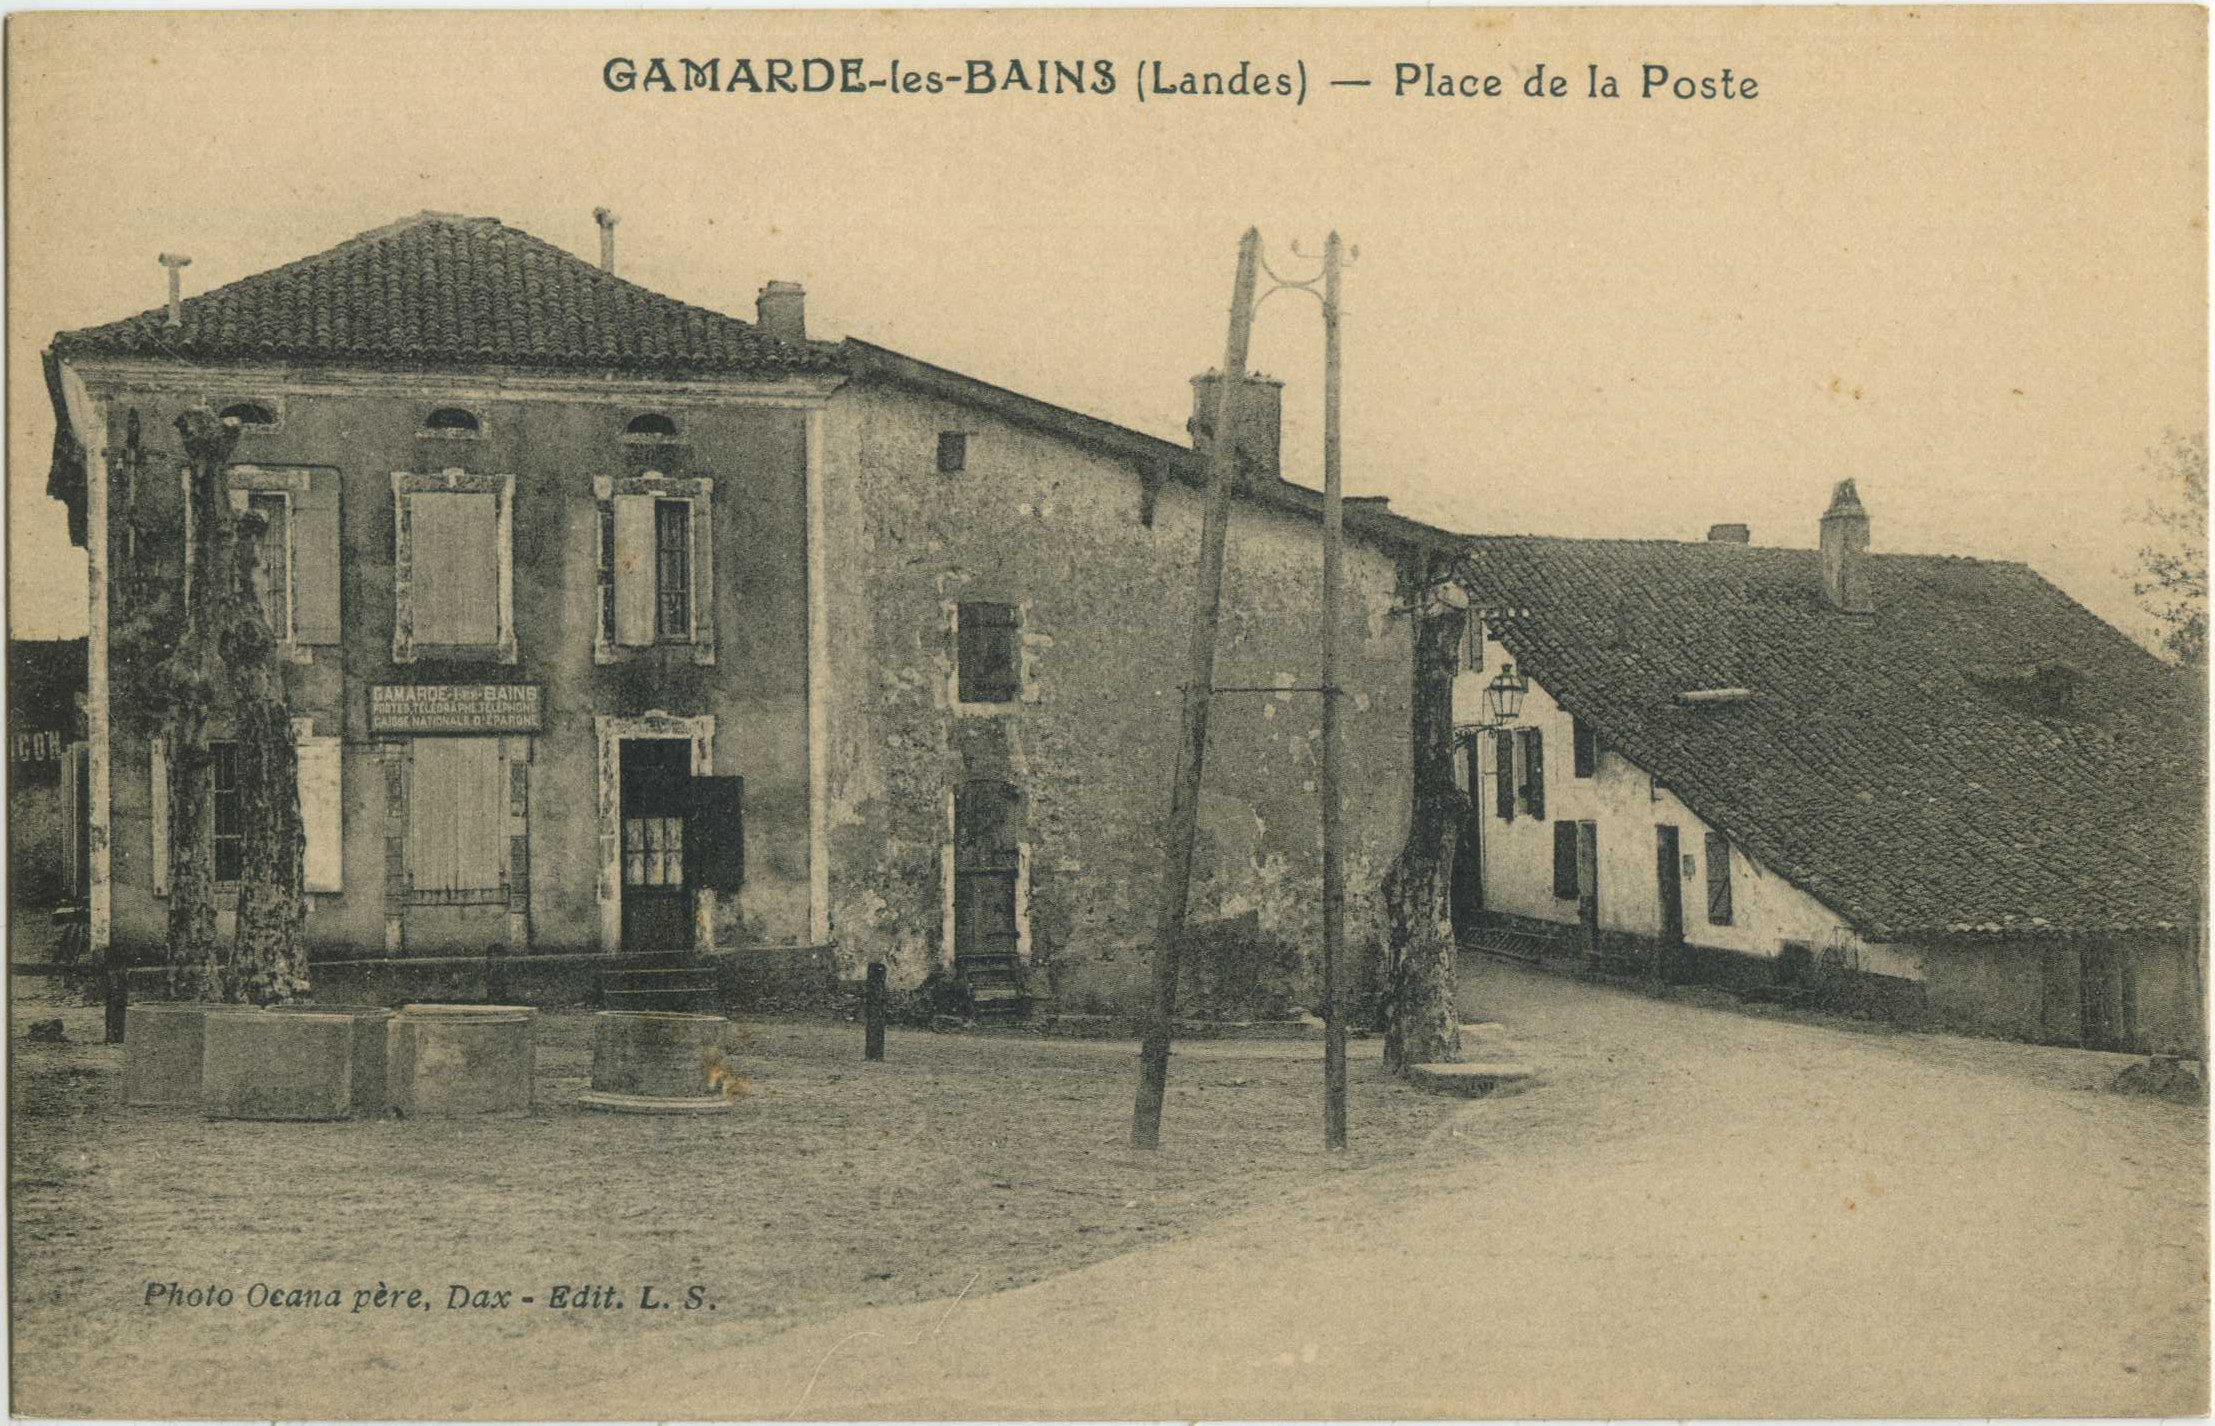 Gamarde-les-Bains - Place de la Poste